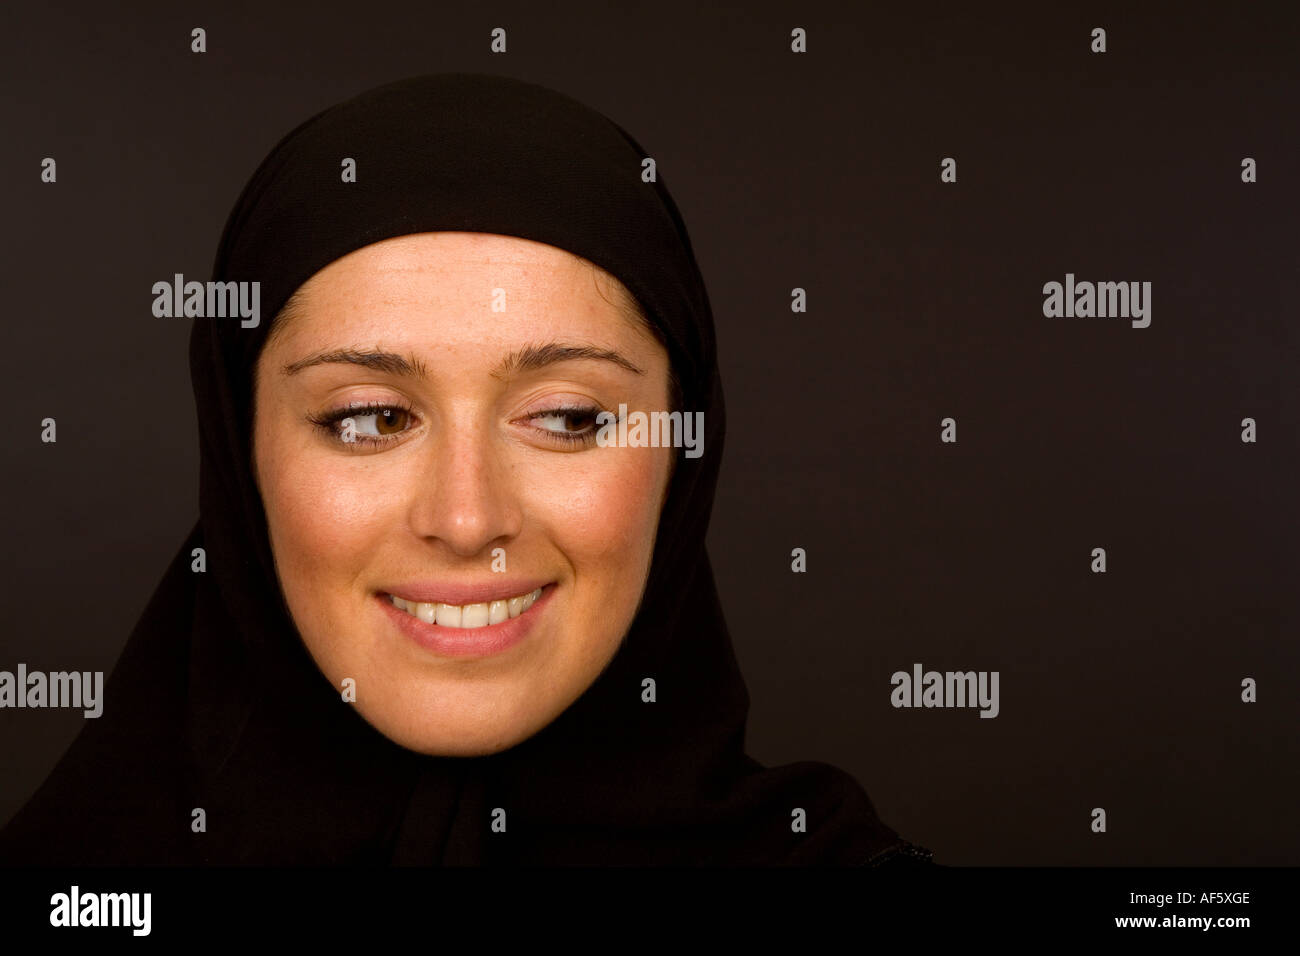 Close up head shot d'une femme musulmane dans un hijab noir Banque D'Images